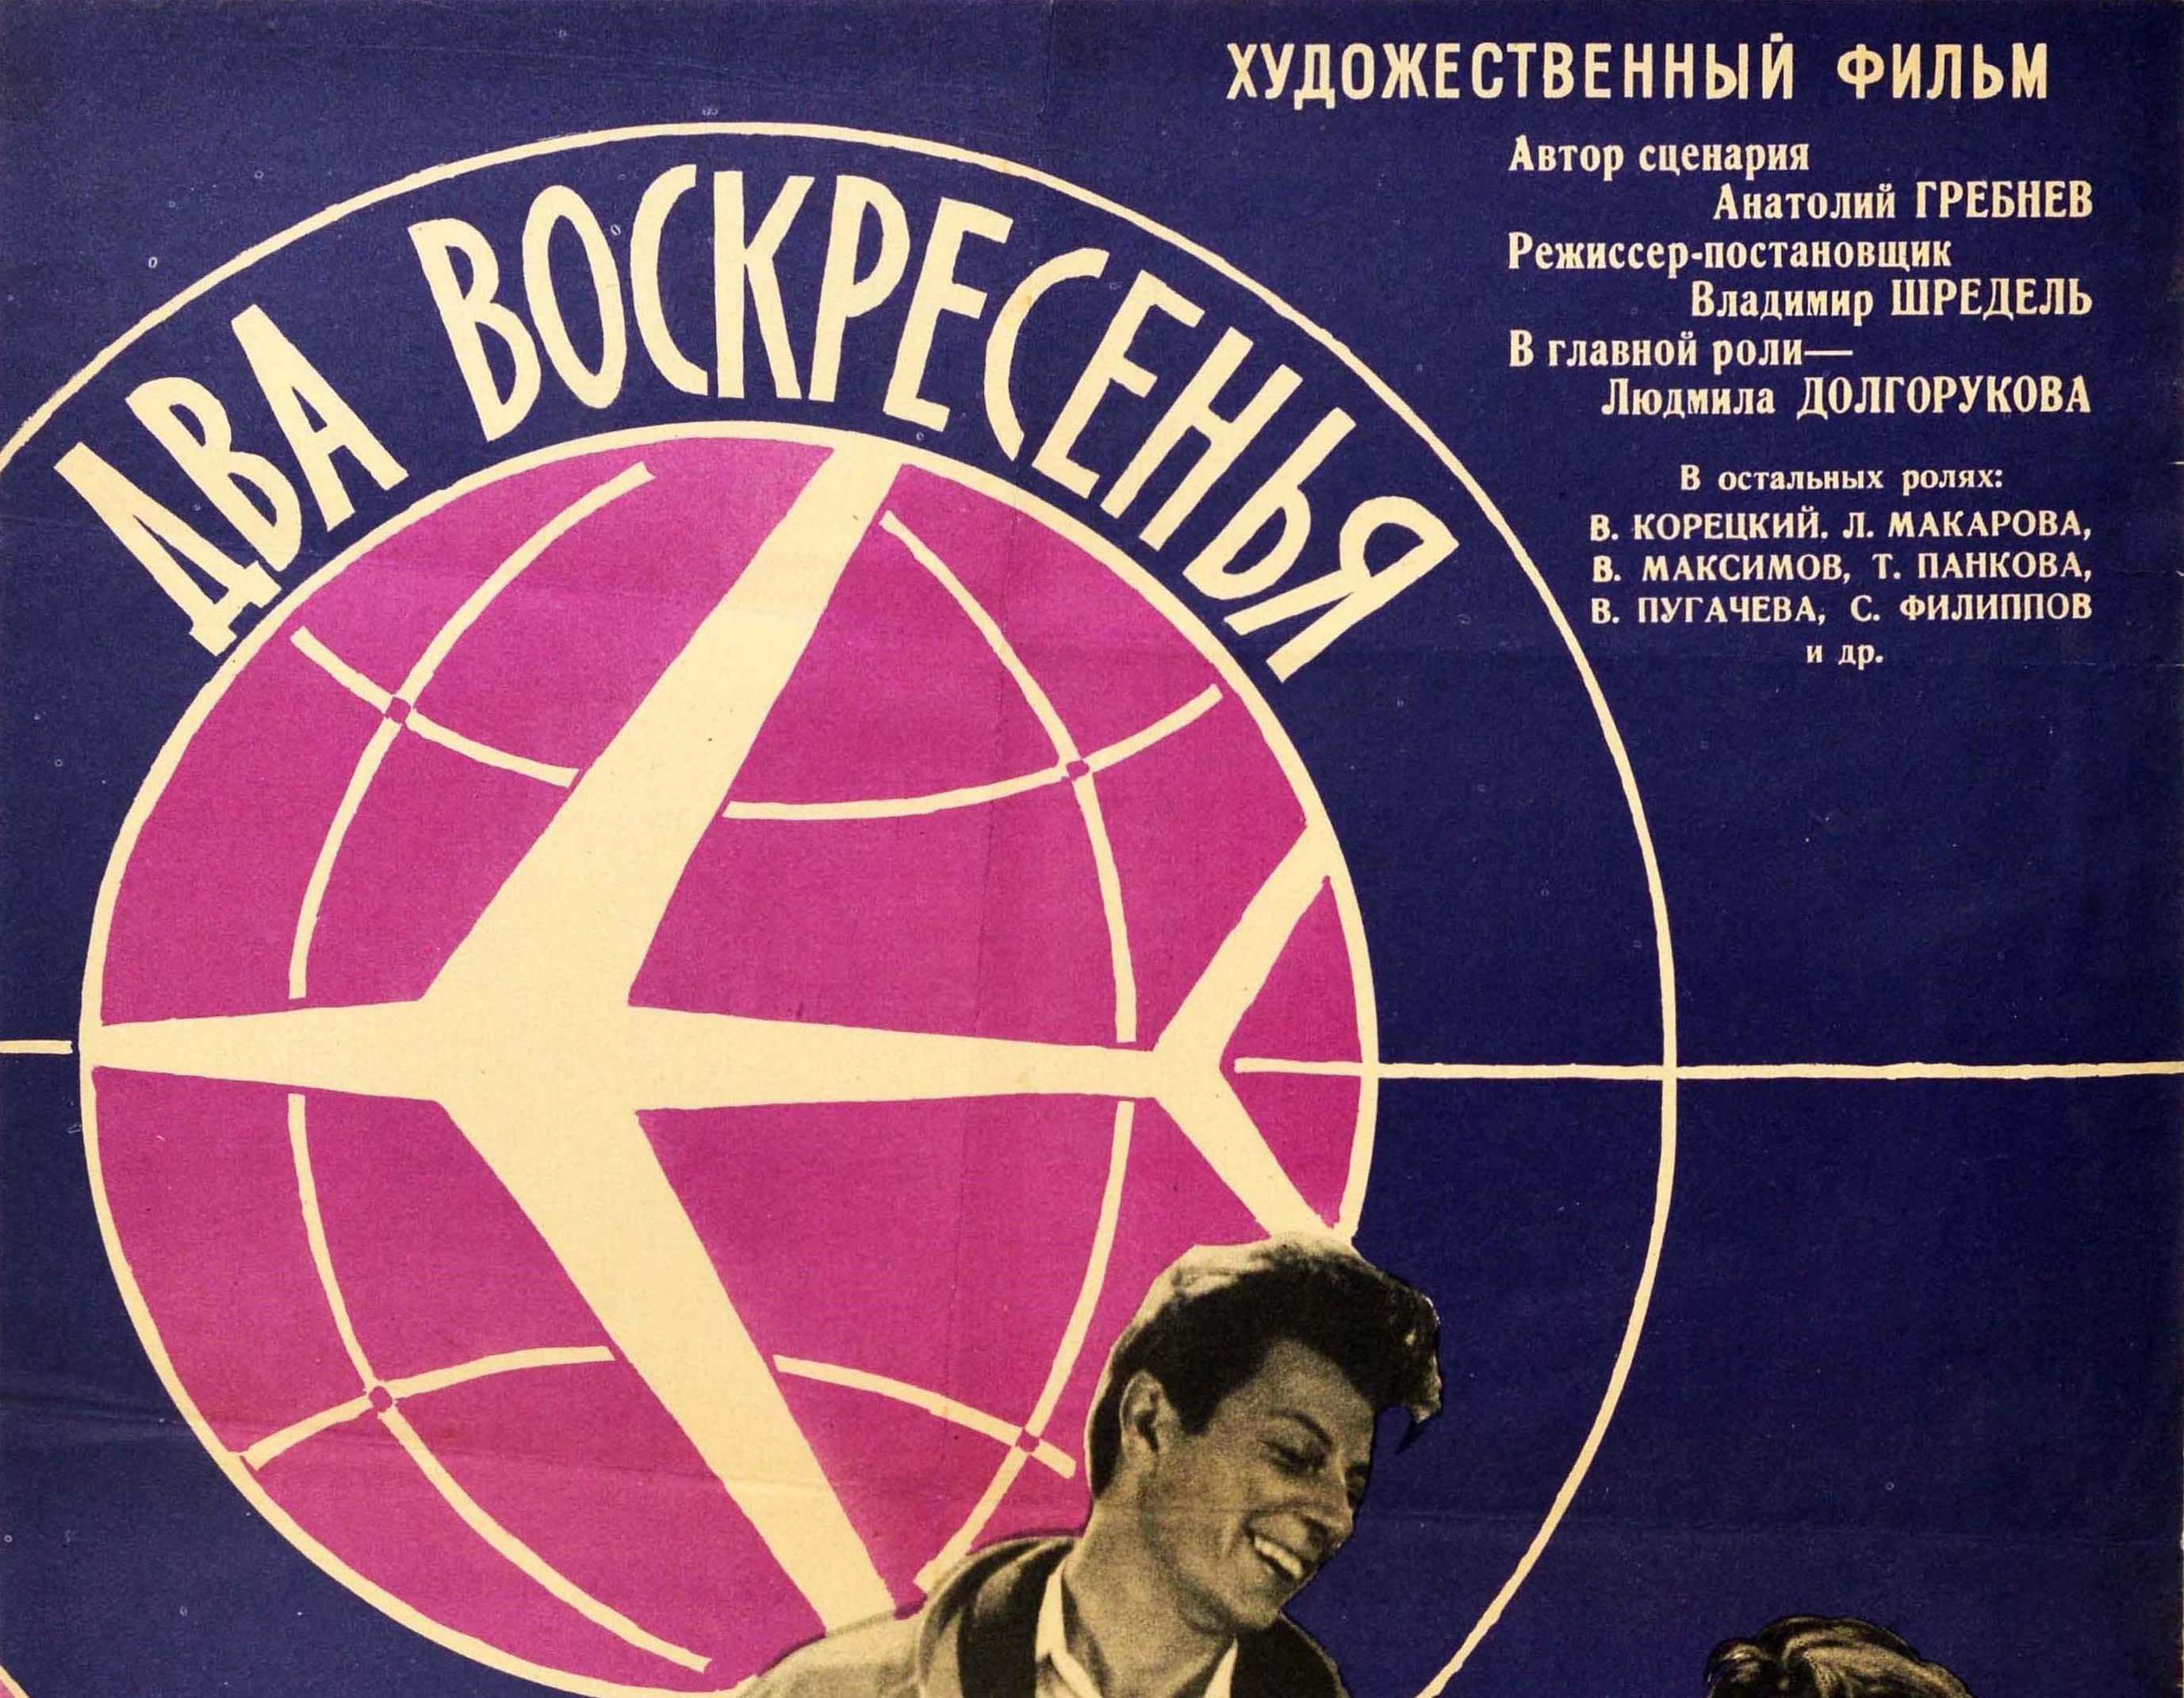 Originales altes Filmplakat für ein sowjetisches Drama aus dem Jahr 1963 ??????????? / Zwei Sonntage unter der Regie von Wladimir Schredel mit einem Schwarz-Weiß-Foto aus dem Film mit den Hauptdarstellern, der modisch gekleideten Ljusja, gespielt